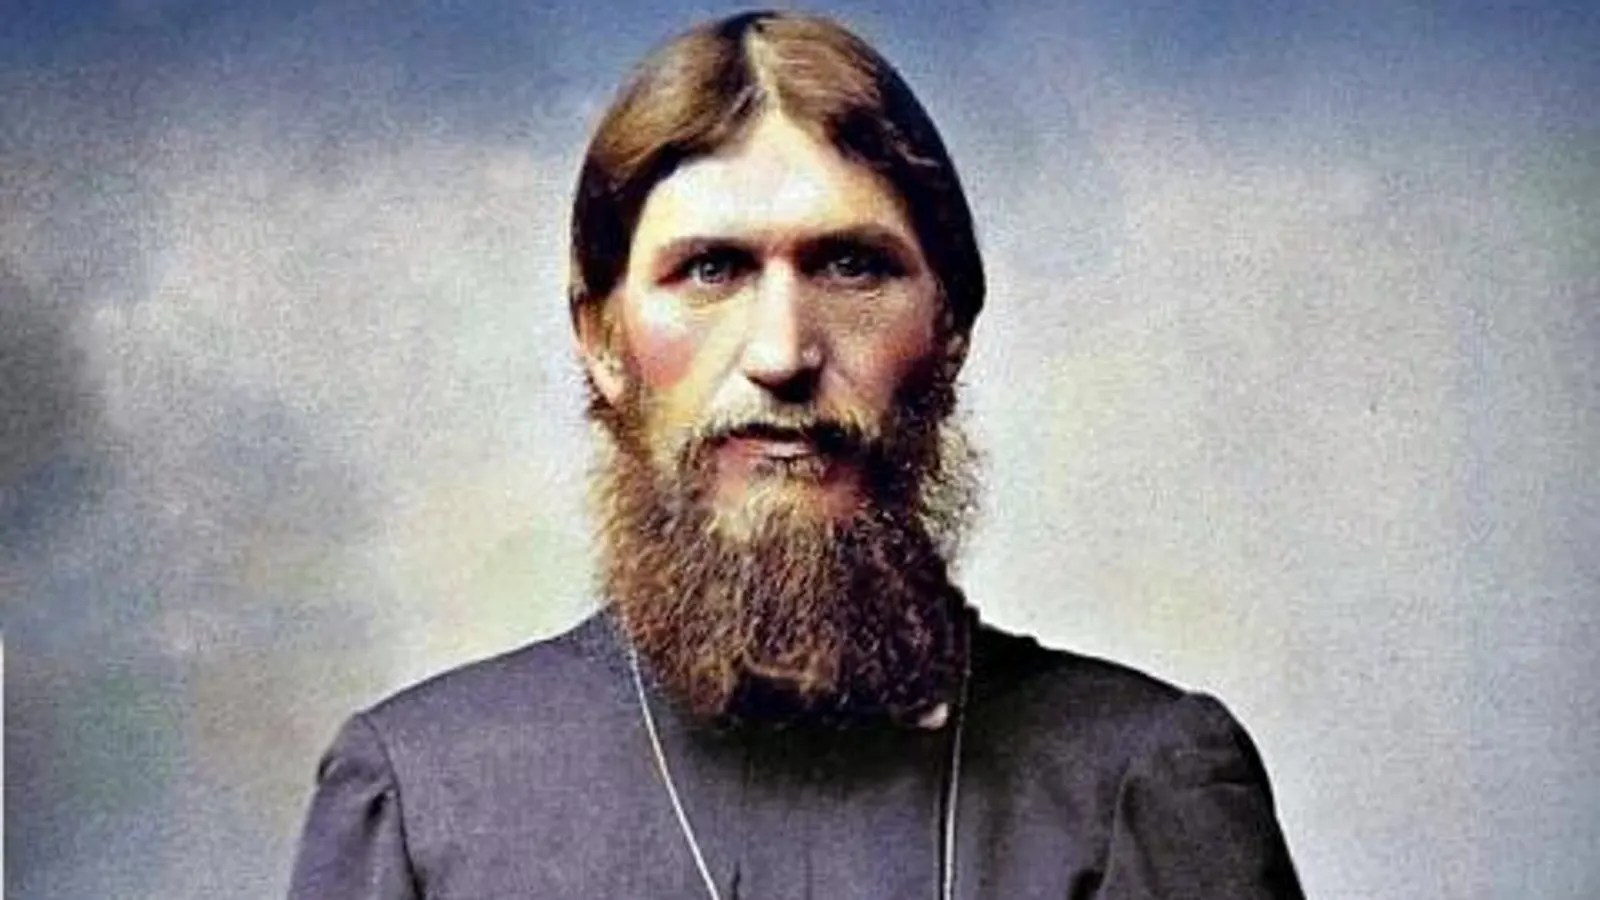 “Los hombres respirarán la muerte”: la escalofriante predicción de Rasputín, el místico ruso, sobre el fin del mundo